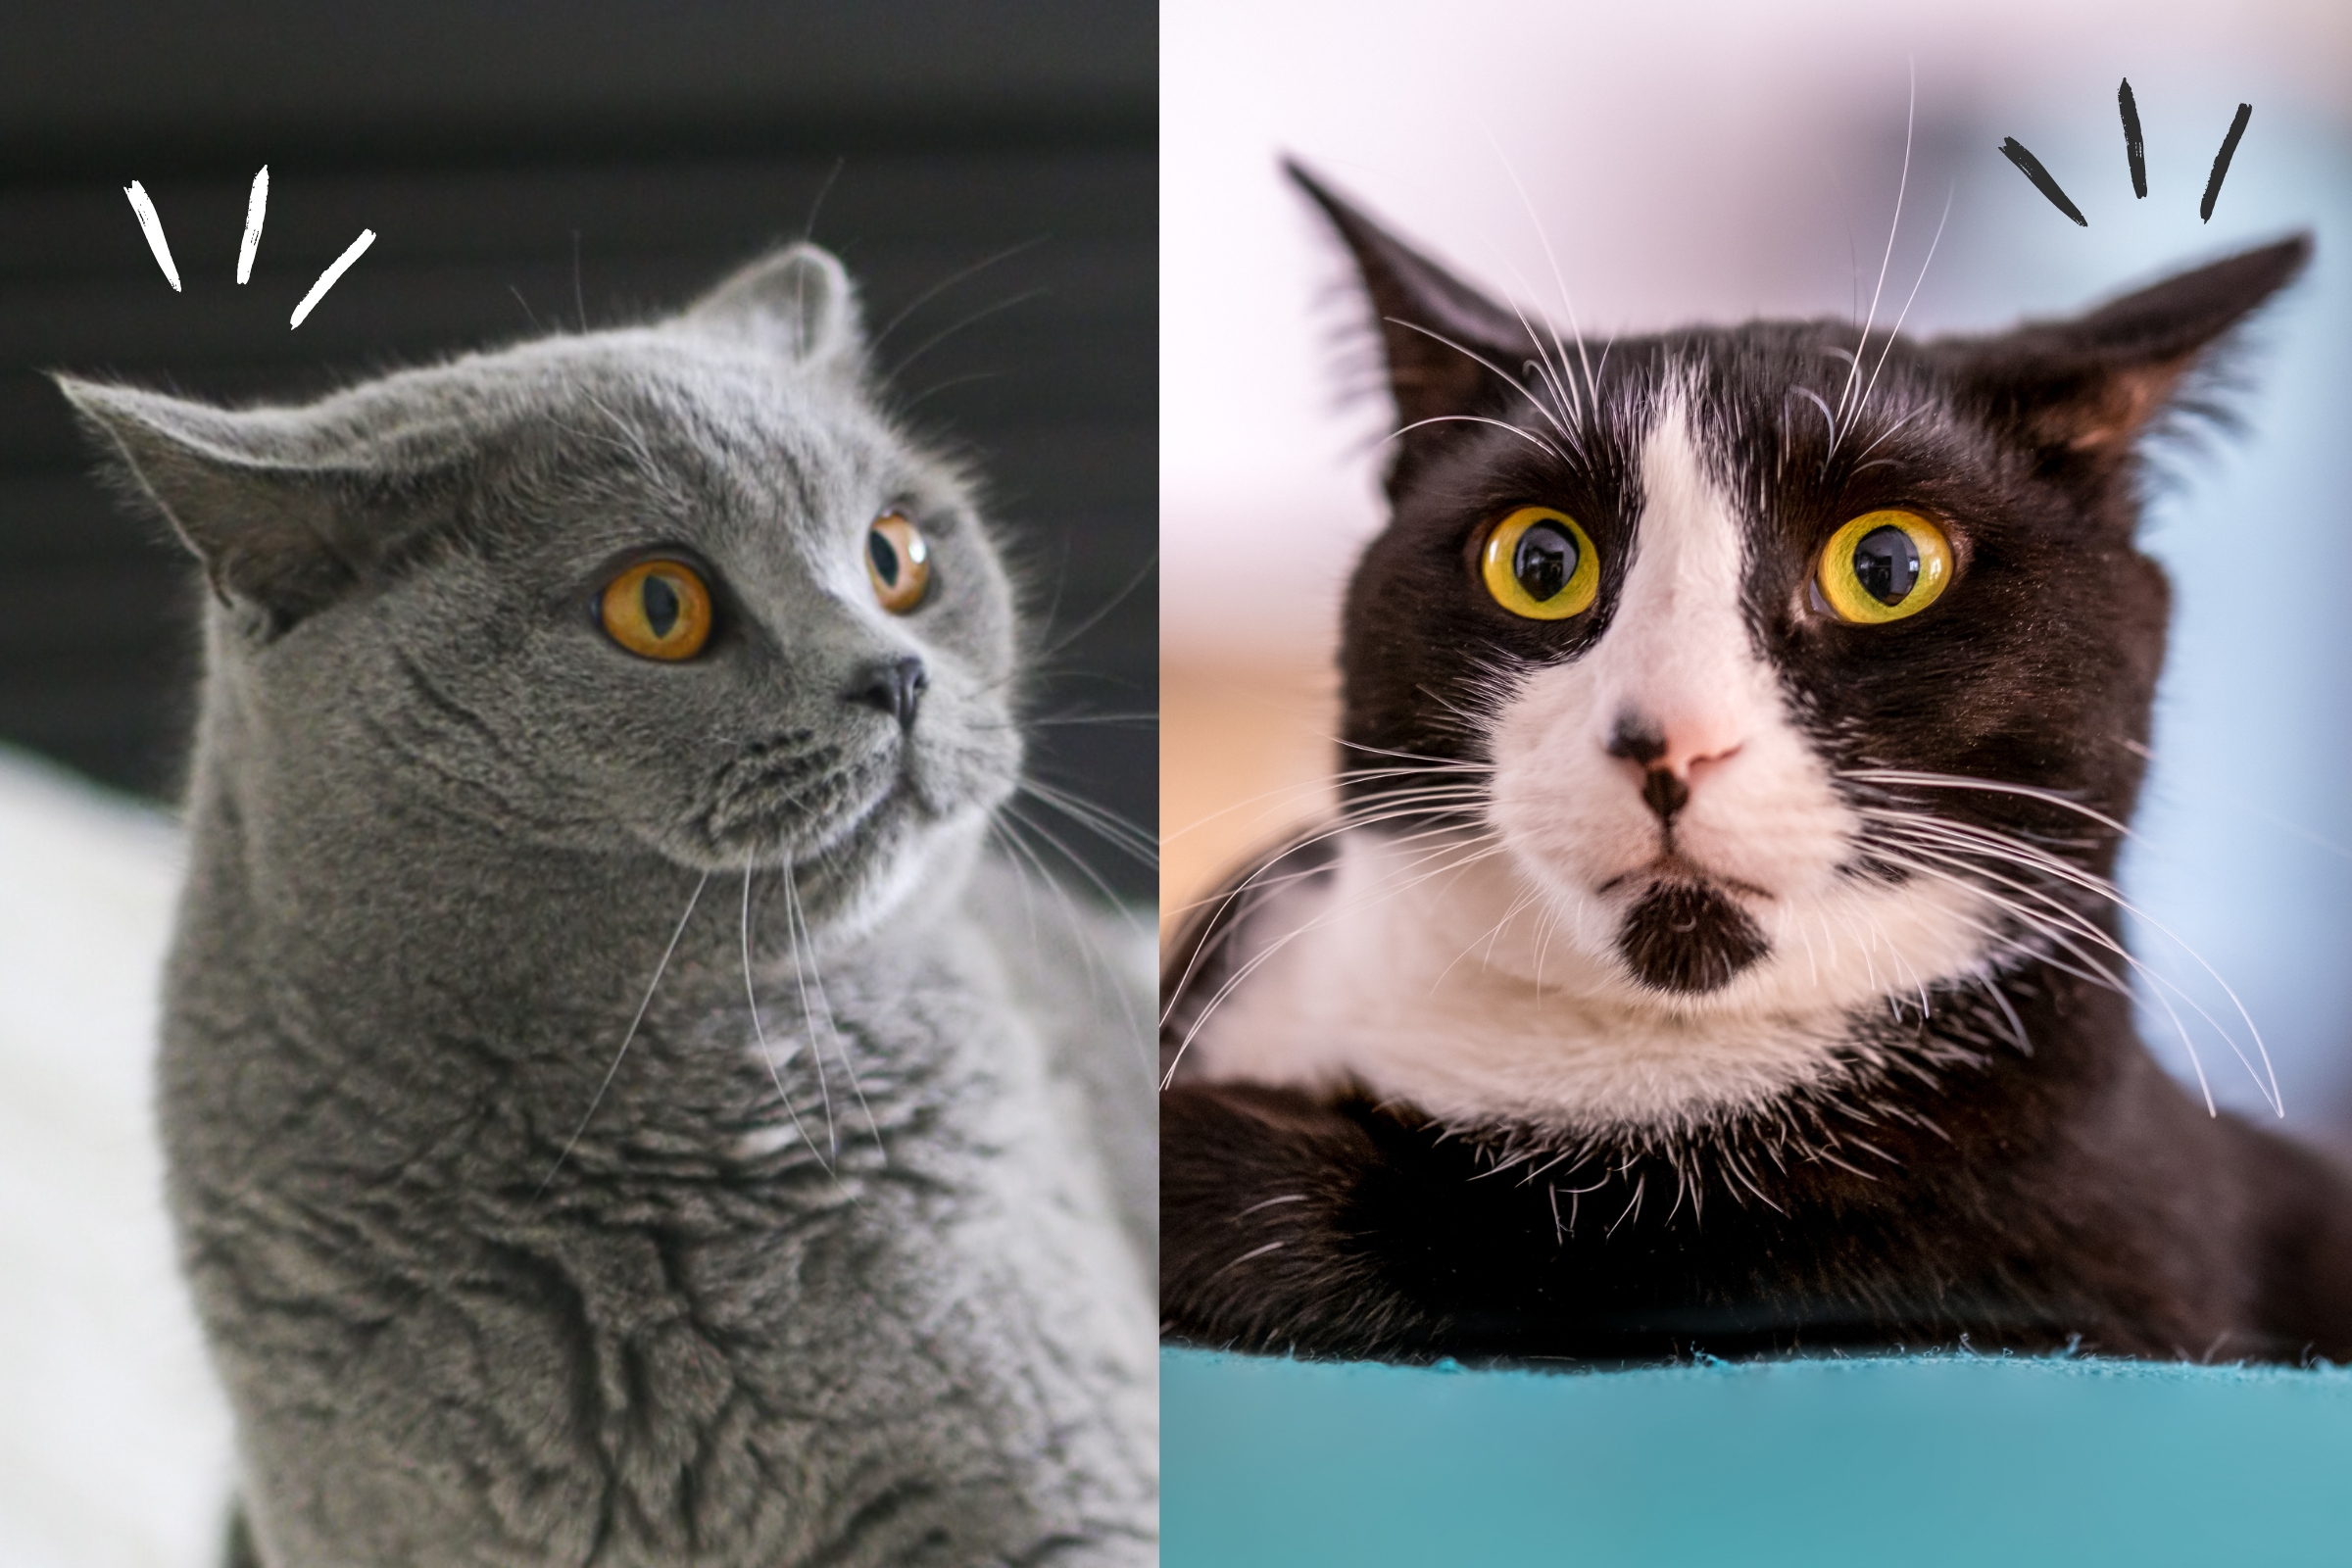 SIC K - Adivinha: Tem orelhas de gato, e não é gato. Tem focinho de gato, e  não é gato rabo-de-gato e não é gato. O que é?